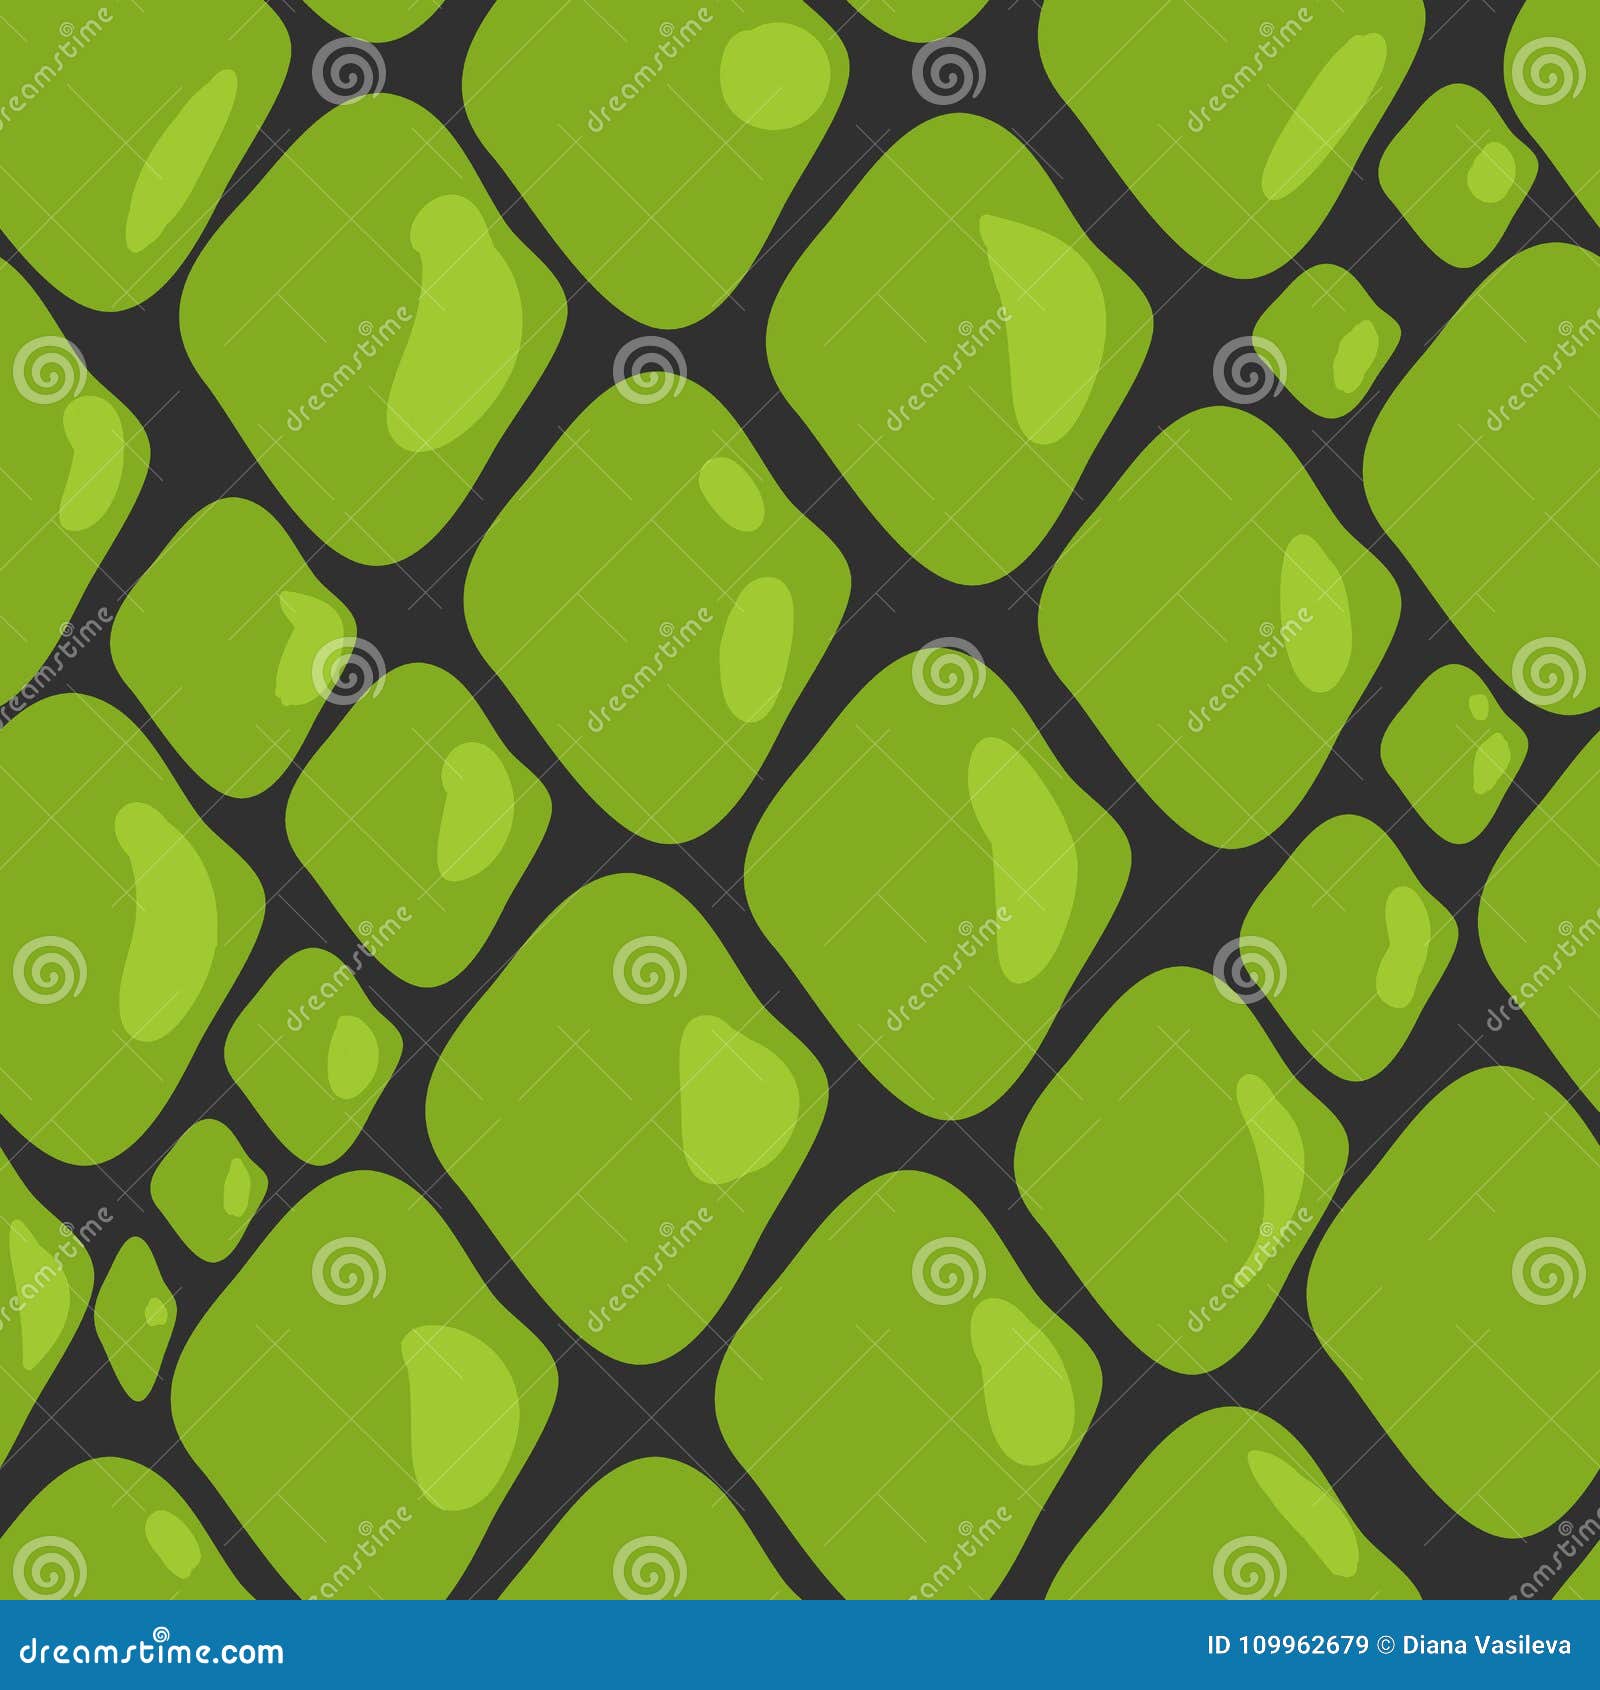 Green seamless snake skin pattern, Stock vector